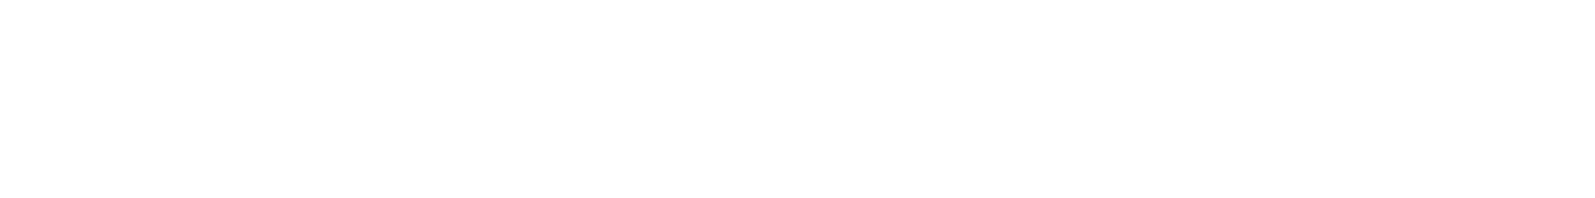 C&D International Investment Group logo grand pour les fonds sombres (PNG transparent)